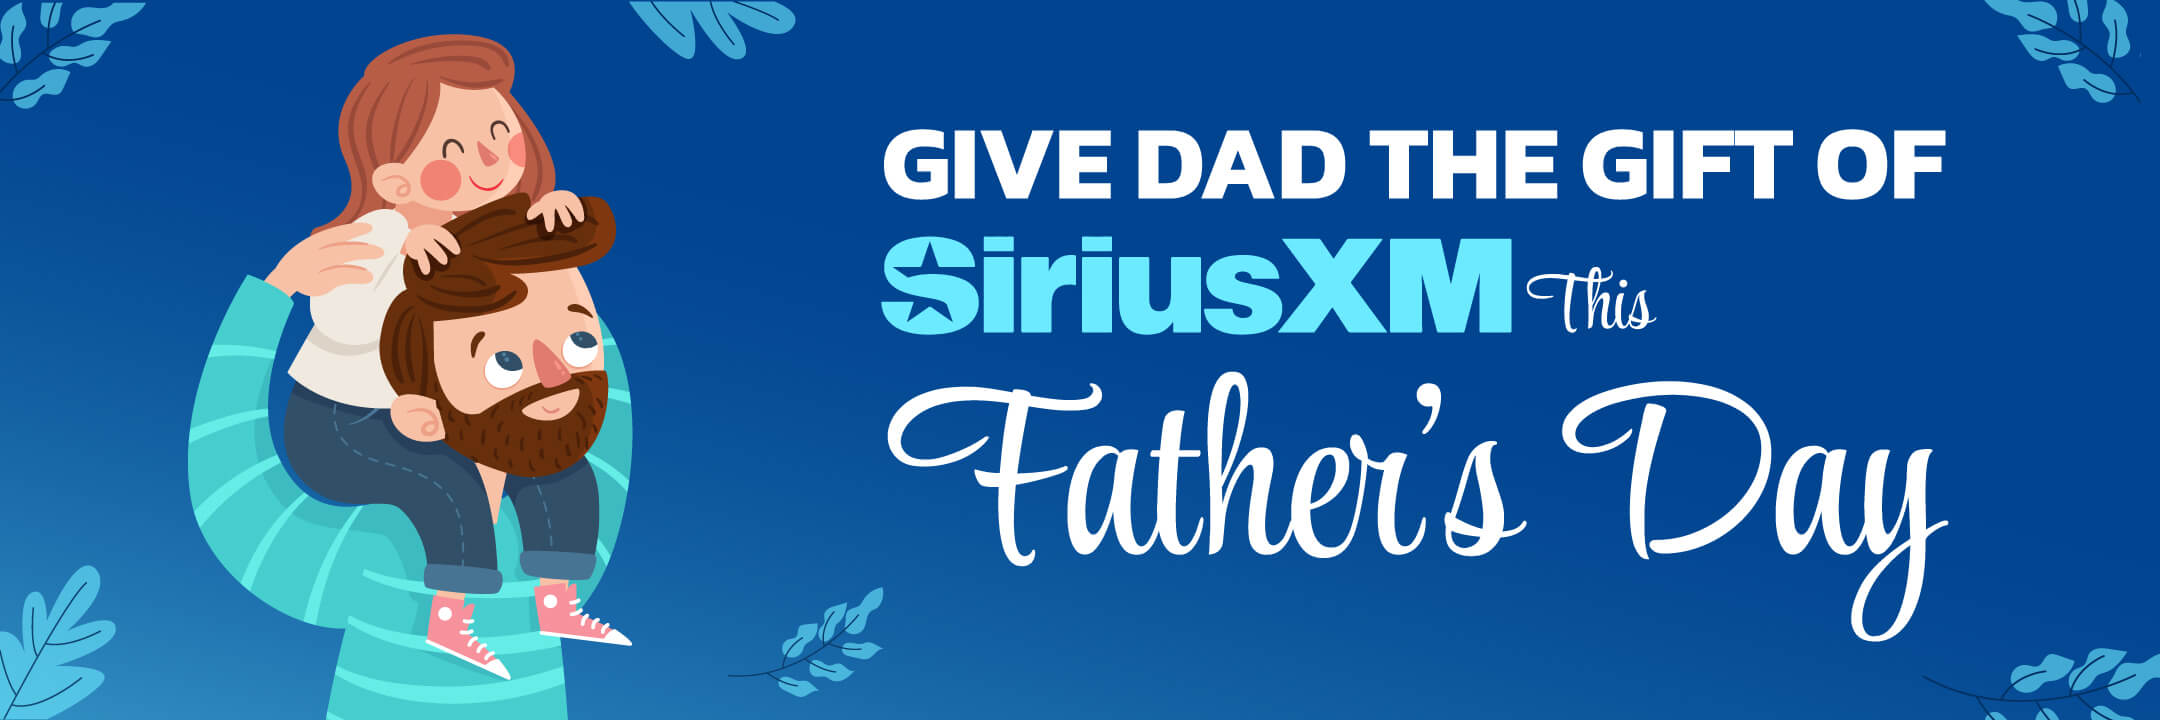 Sirius-XM-Satellite-Radio-Father's-Gift-Giving-Ideas